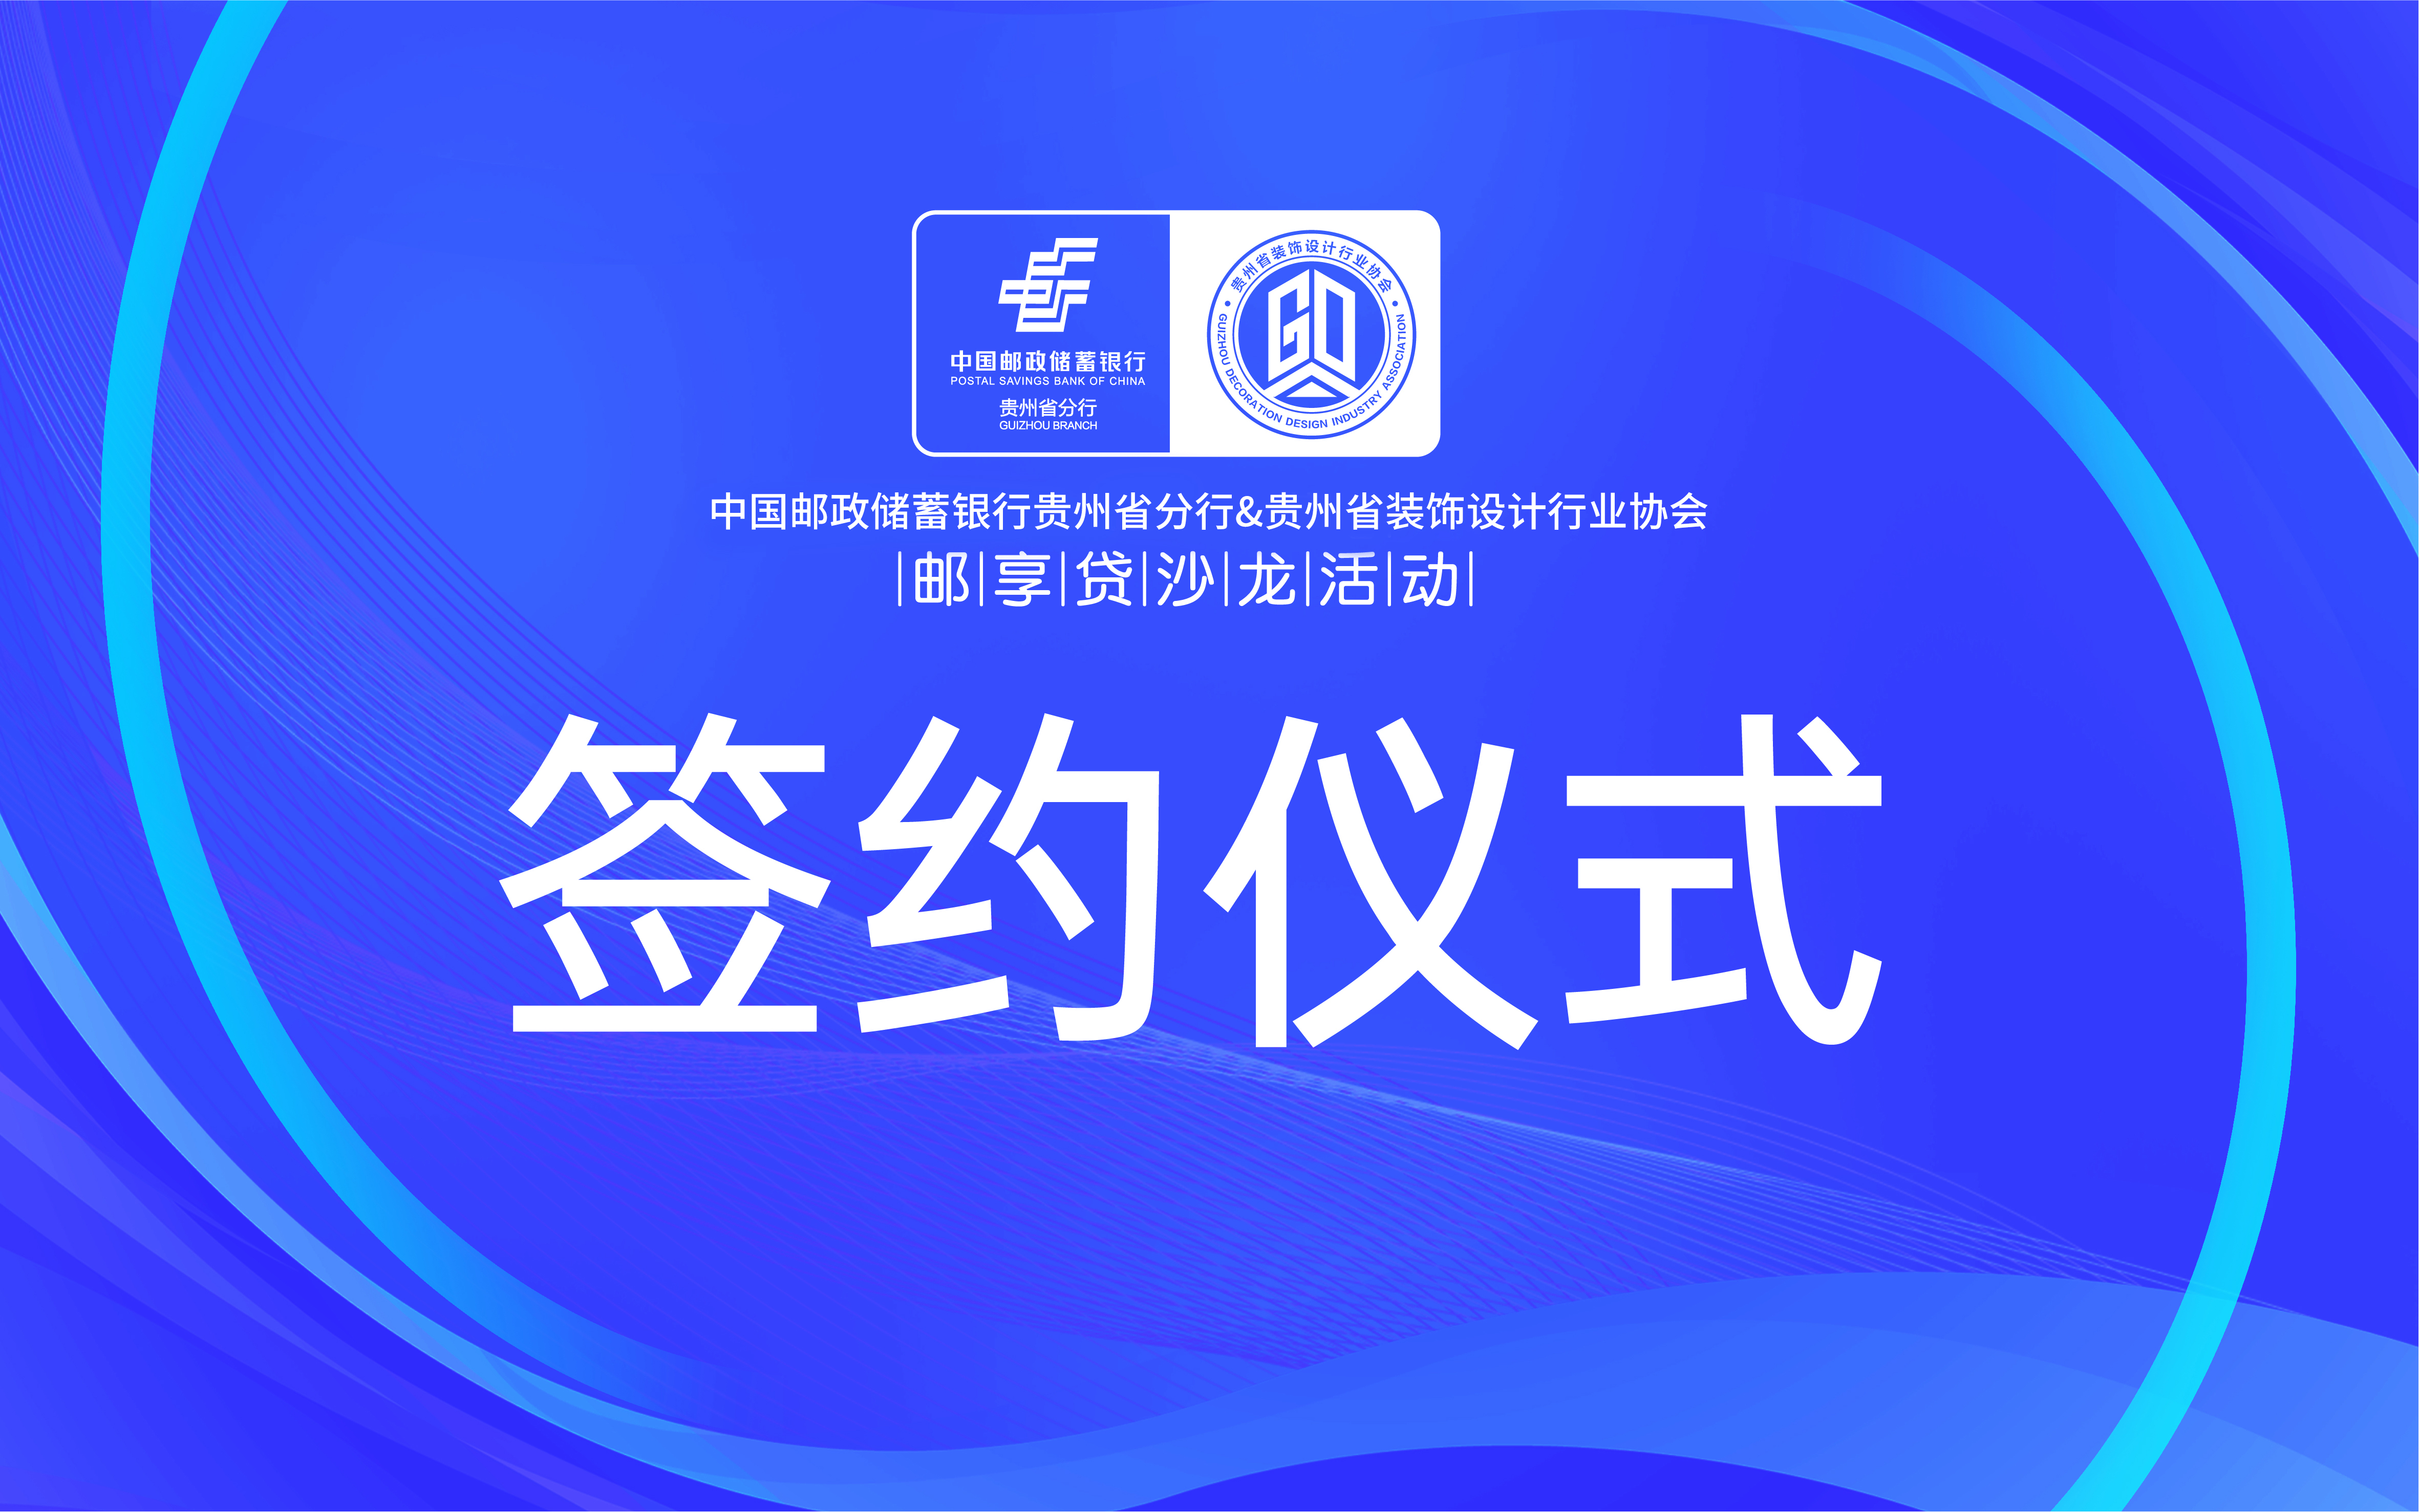 2022年11月18日14点，贵州省装饰设计行业协会与中国邮政储蓄银行贵州省分行，双方经过平等友好的协商，在相互信任、相互尊重的基础上，本着平等互利、合作共赢的...